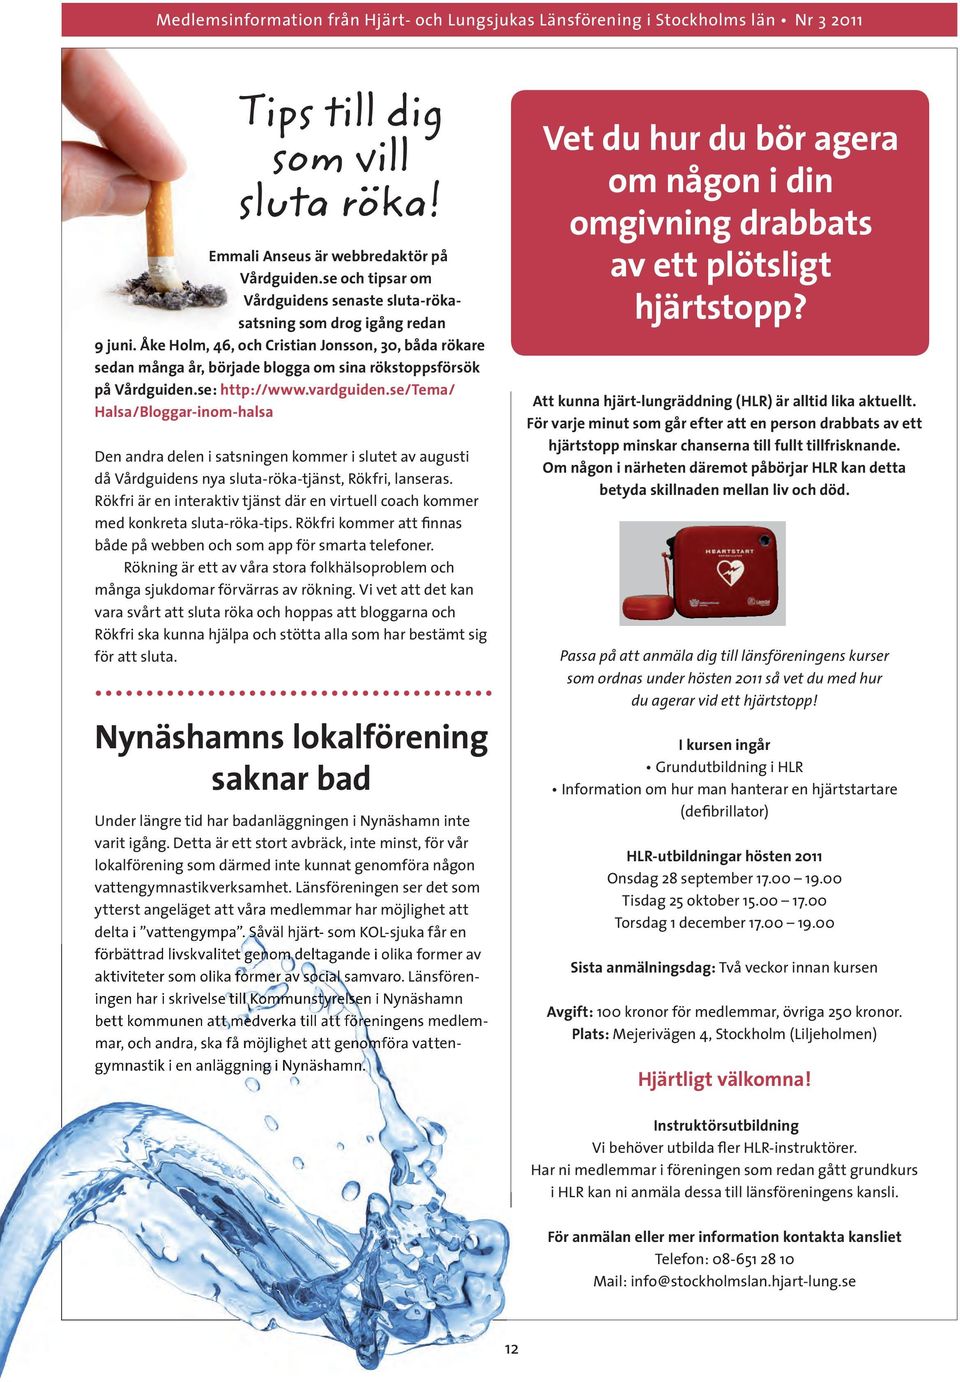 se/tema/ Halsa/Bloggar-inom-halsa Den andra delen i satsningen kommer i slutet av augusti då Vårdguidens nya sluta-röka-tjänst, Rökfri, lanseras.